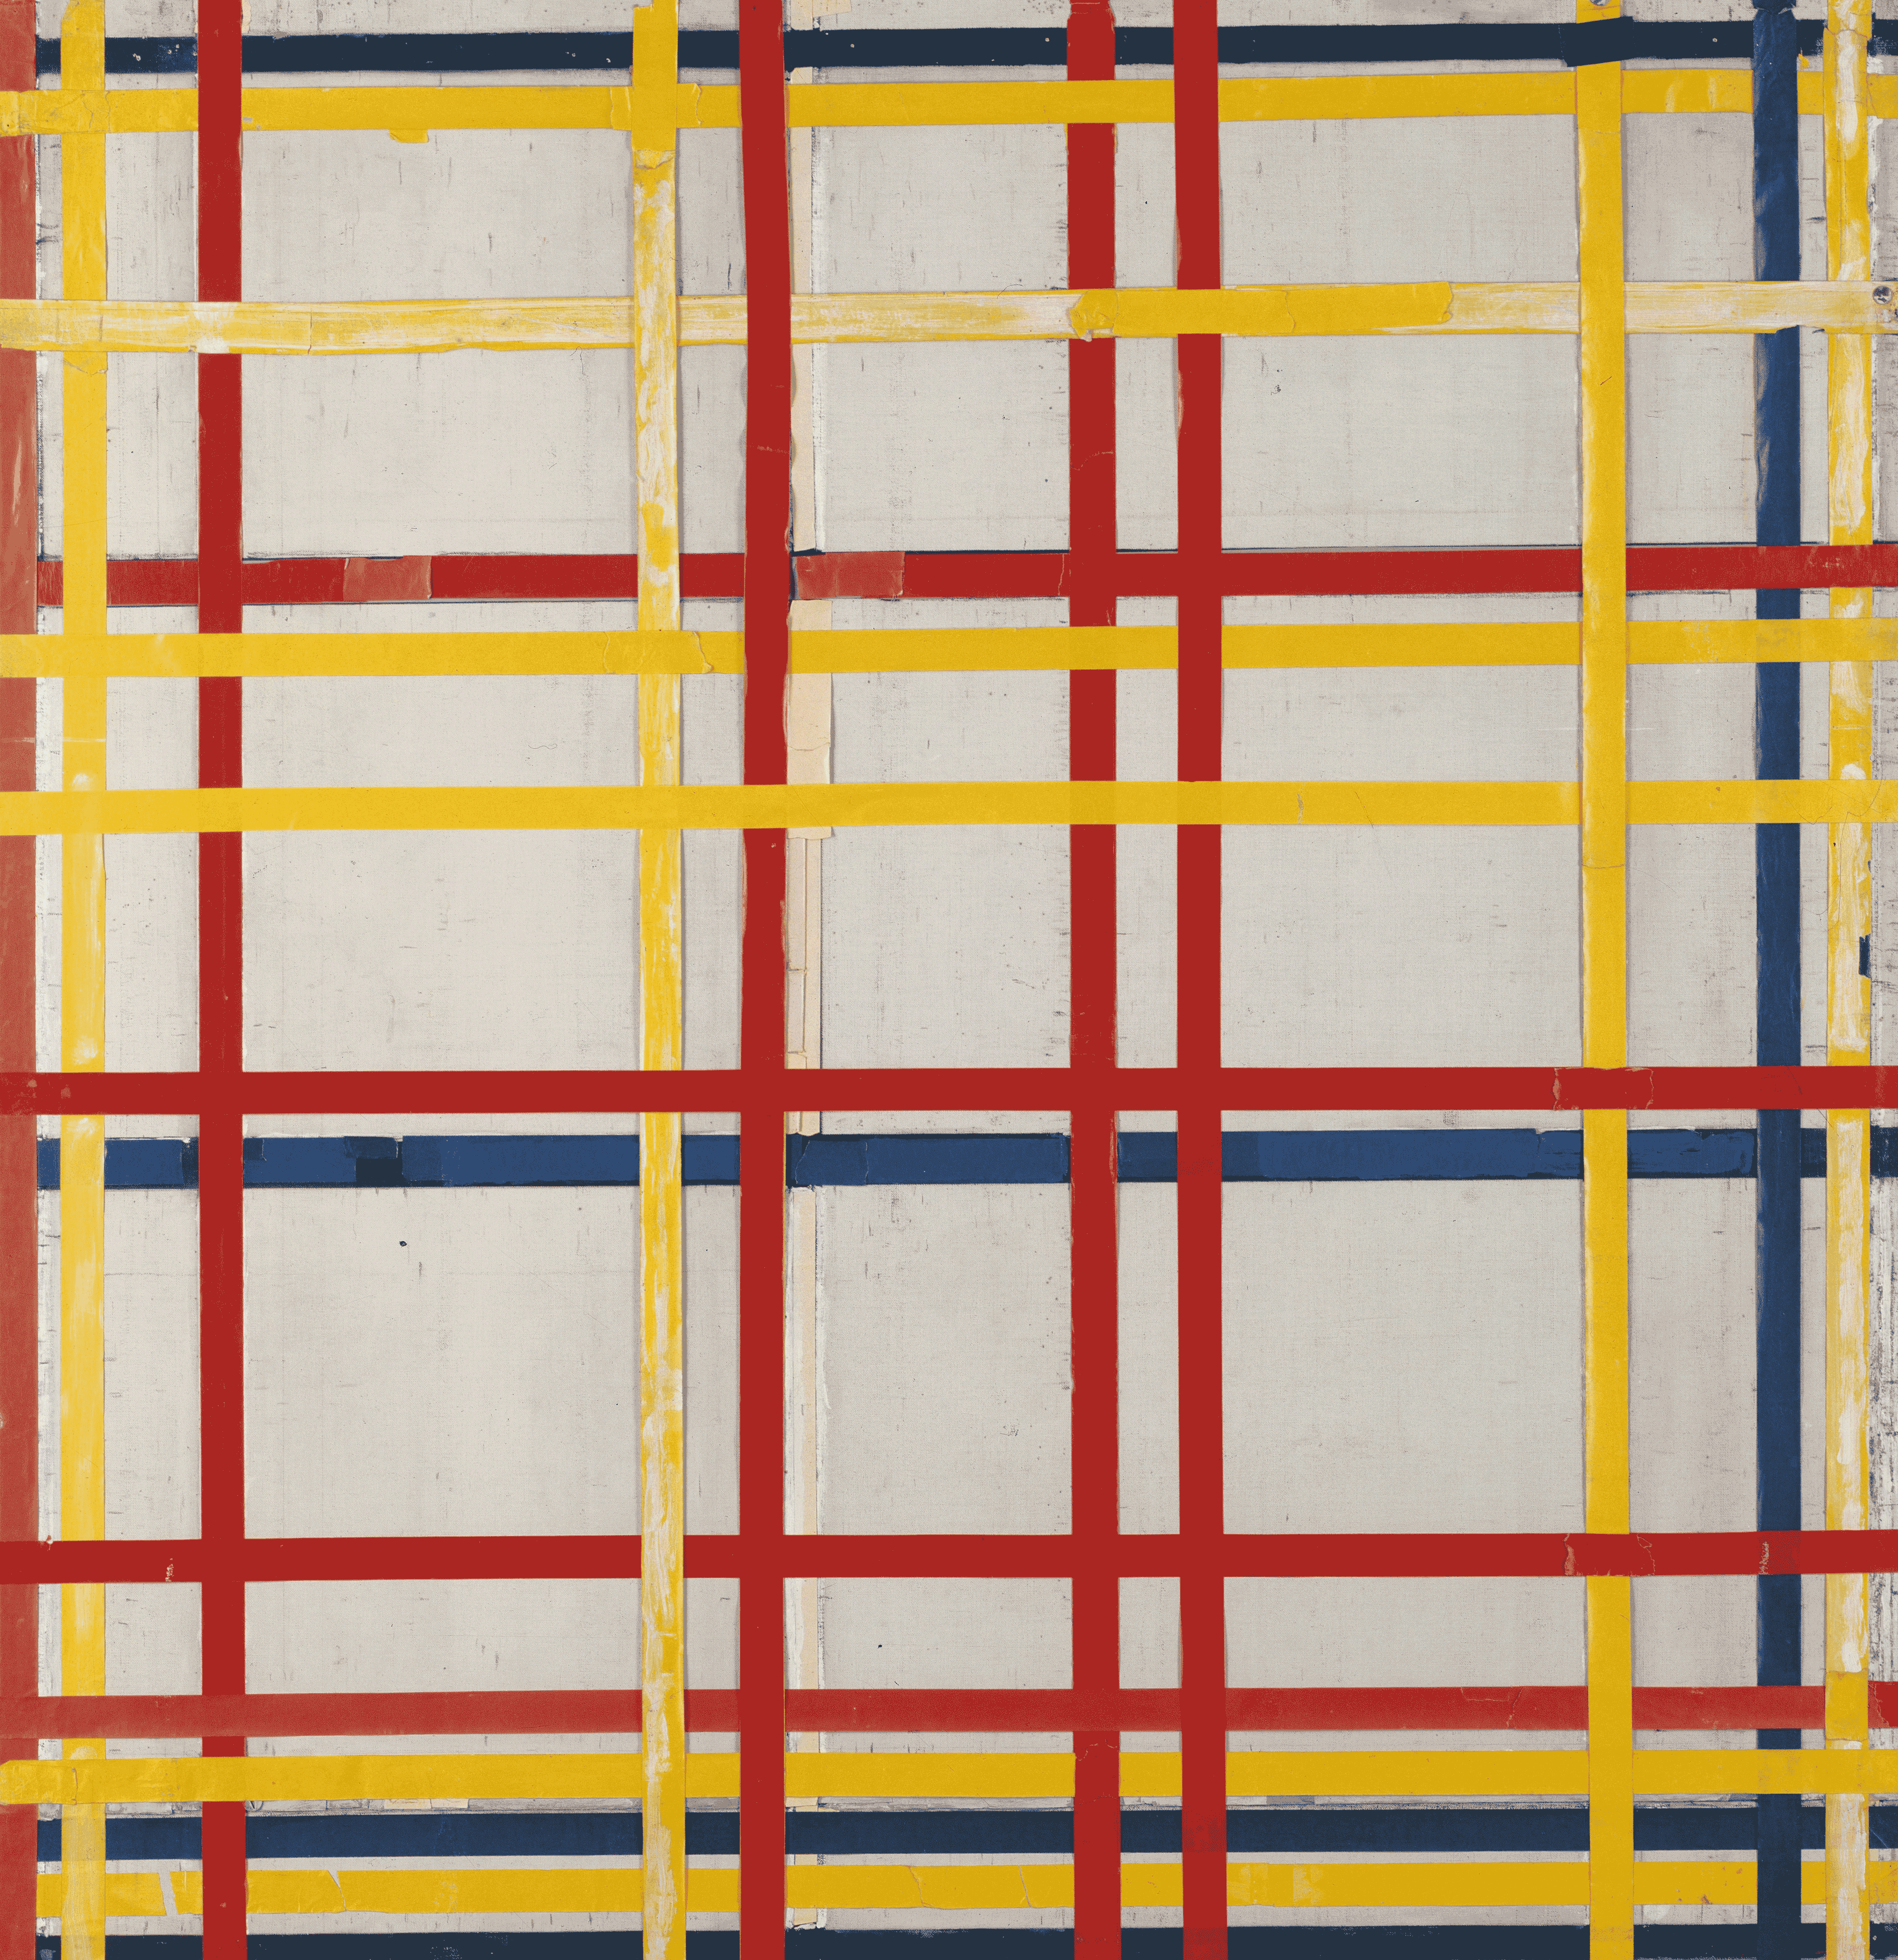 Piet Mondrian's New York City I (1941)